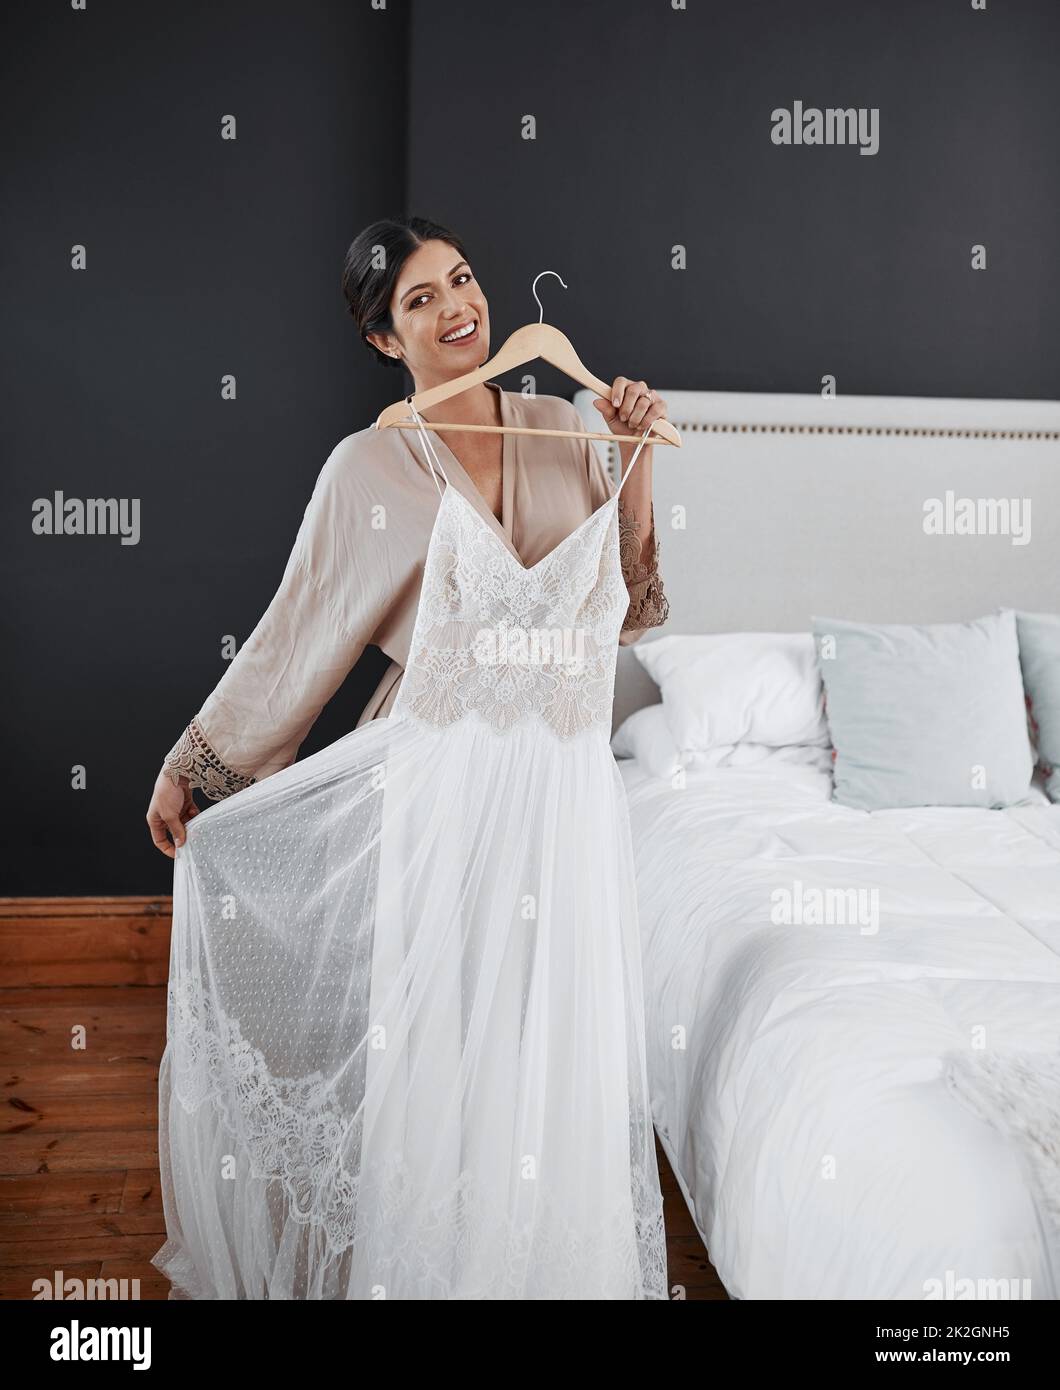 Meine großen Tage endlich hier. Ein Porträt einer attraktiven jungen Braut, die sich für ihre Hochzeitszeremonie in ihrem Schlafzimmer vorbereitet. Stockfoto